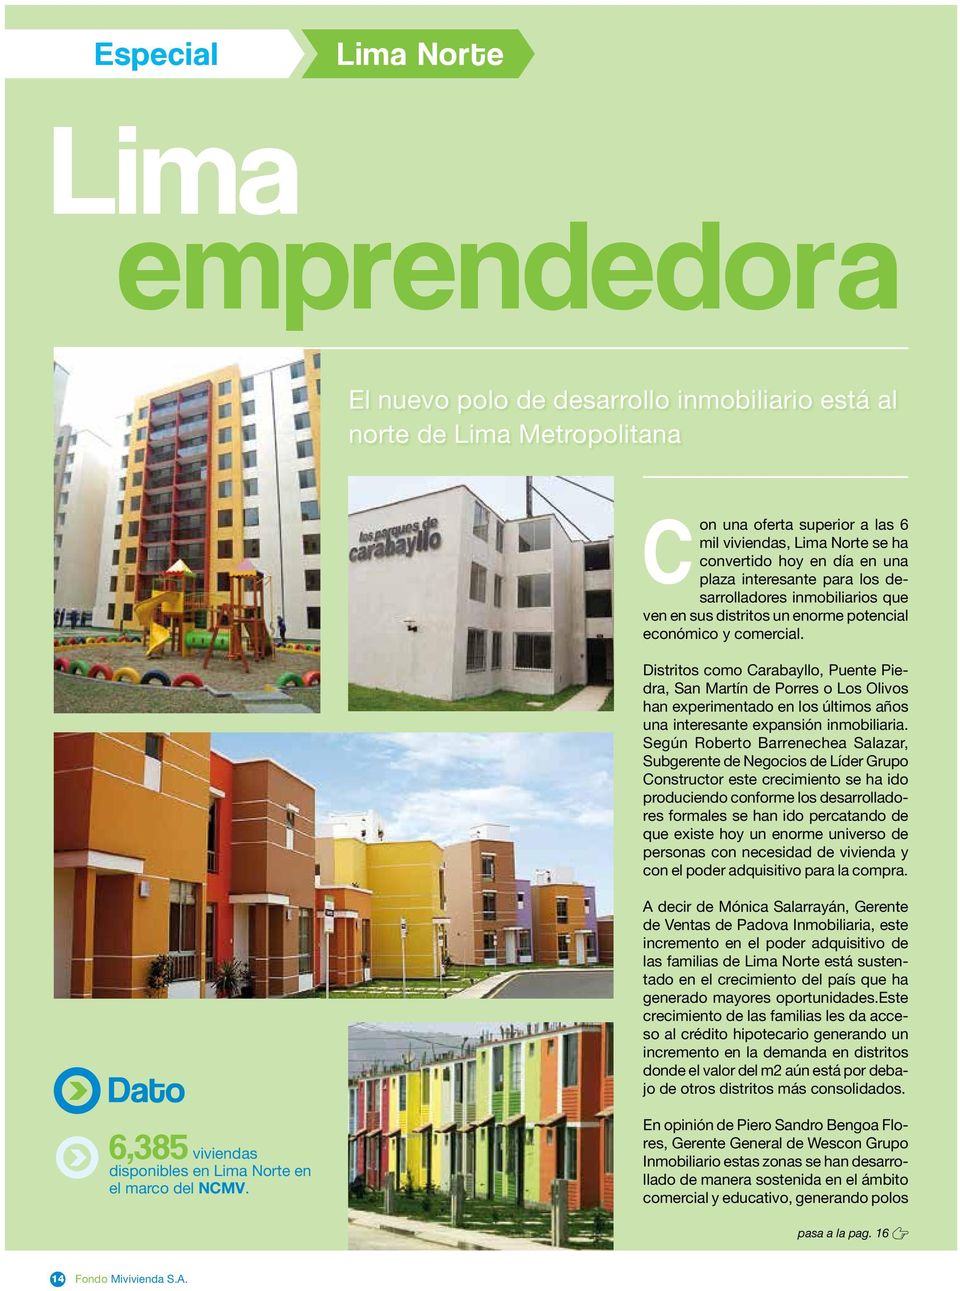 Distritos como, Puente Piedra, San Martín de Porres o Los Olivos han experimentado en los últimos años una interesante expansión inmobiliaria.